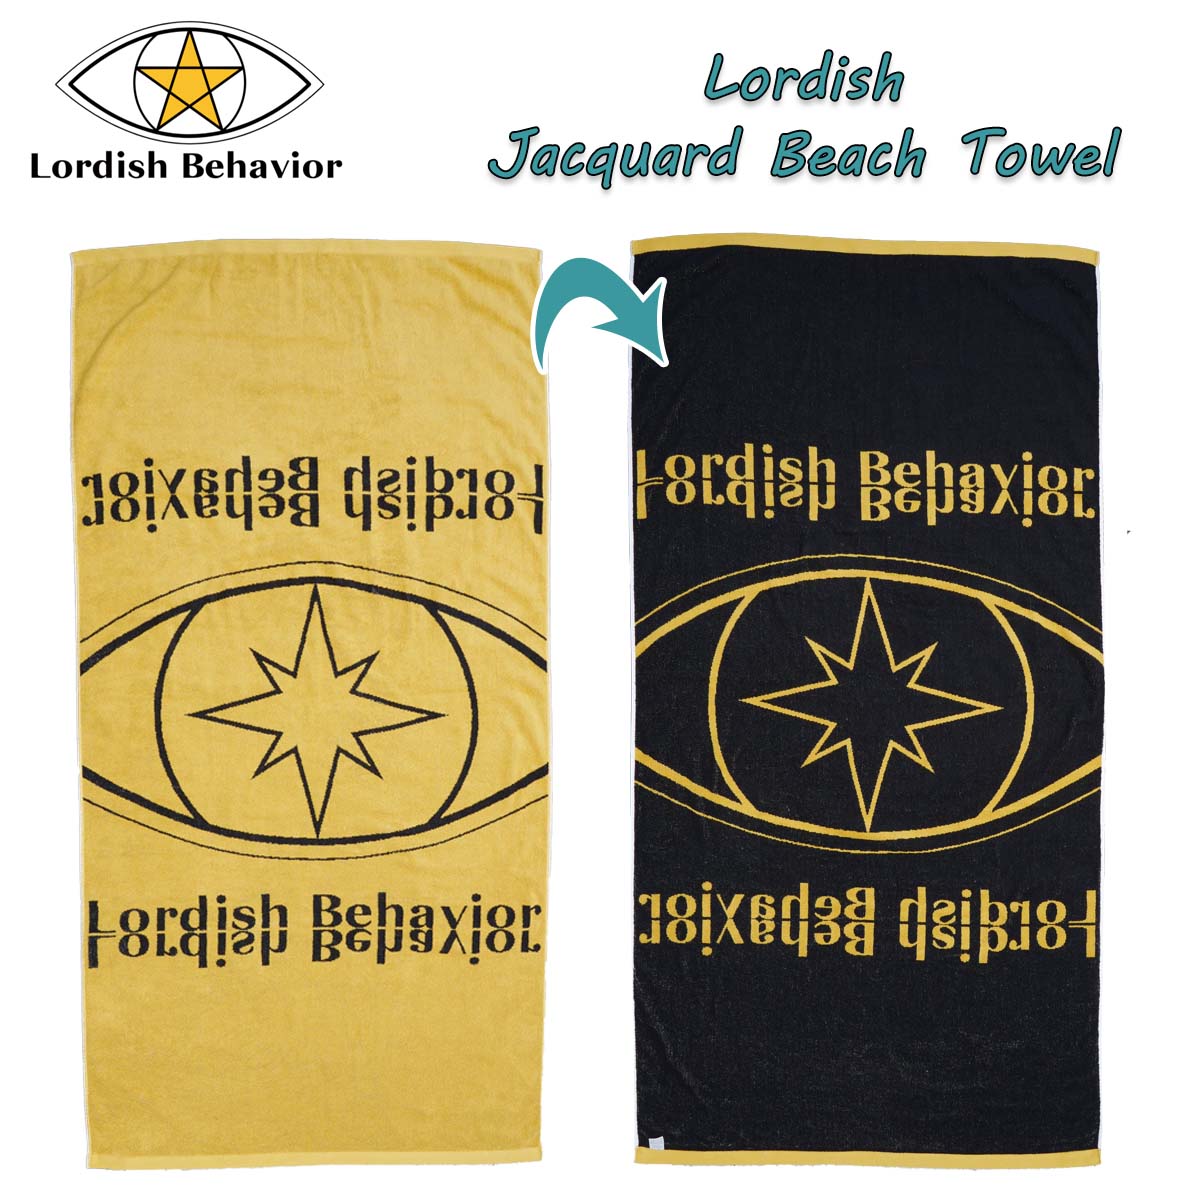 Lordish Behavior ローディッシュビヘイビア ビーチタオル Jacquard Beach Towel 今治タオルで製作しています。 ジャガードタオルの大きなメリットは「生地の立体感」「やわらかい質感」「高い保温性・吸水性」の3つです。 特に厚みがあり上品な2色毛違いジャガードタオルでは、タオルの全面がパイル地（ループ状）になっているため、保温性・吸水性に長けています。 ■カラー： イエロー ■サイズ： F(80cm× 155cm) ■素材： 綿100% ※クレジットカード/銀行振り込みなど、15時までに決済完了の場合は即日発送！(※15時以降の決済確認は翌日以降ご入金確認後の発送） ○デザイン等、予告なしに変更となる場合があります。ご了承ください。 ○掲載商品の色は、できる限り現品と同じになるよう努めておりますが、ご使用のパソコン環境により多少色合いが異なる場合がございます。著しい色の相違は御座いませんのでご安心ください。 ○お急ぎのお客様は、ご確認していただく事をお勧め致します。 メーカー希望小売価格はメーカーサイトに基づいて掲載しています